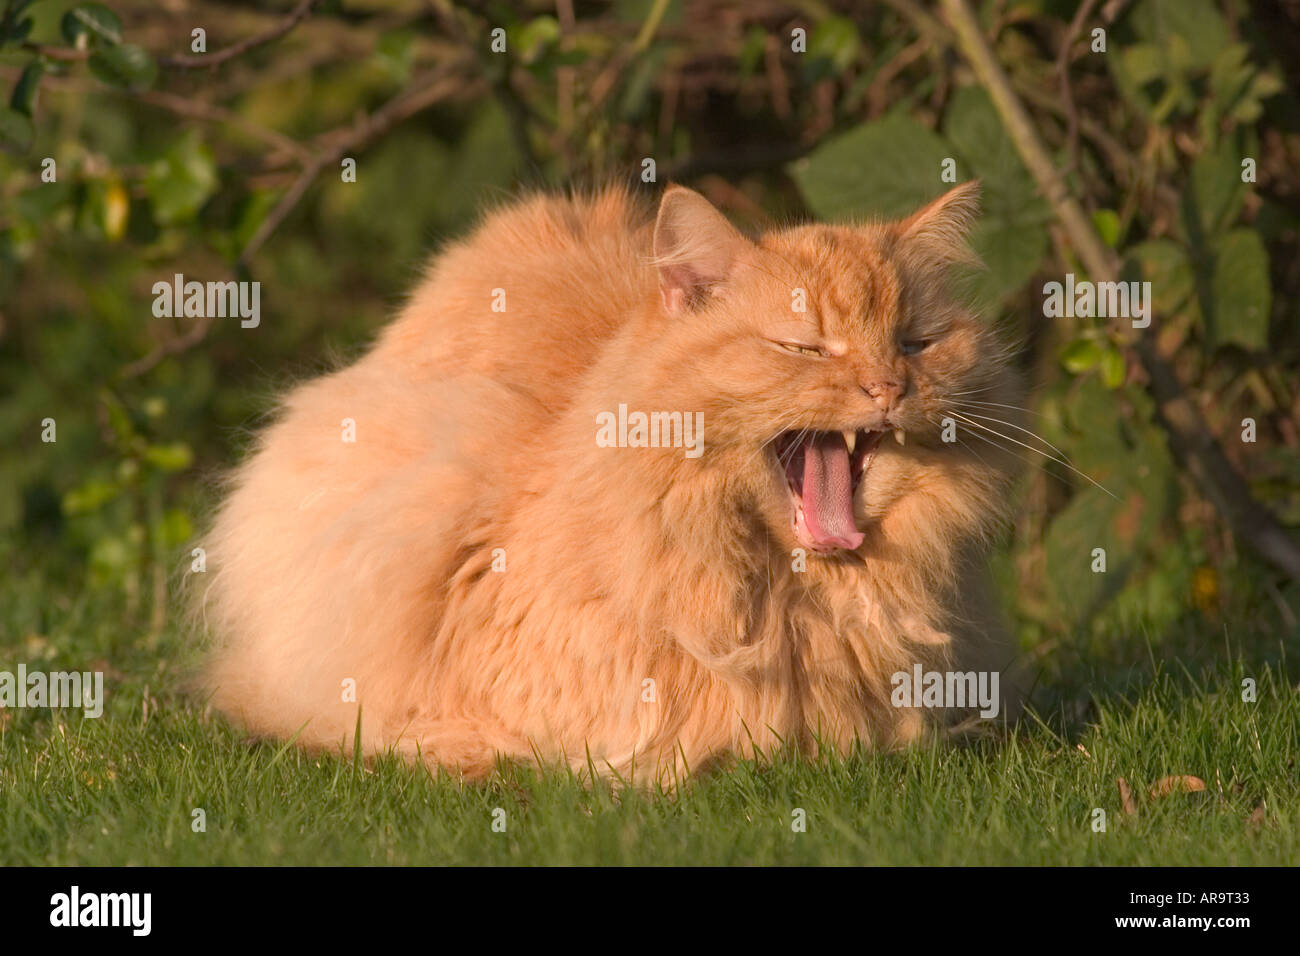 Long haired ginger cat in garden Stock Photo